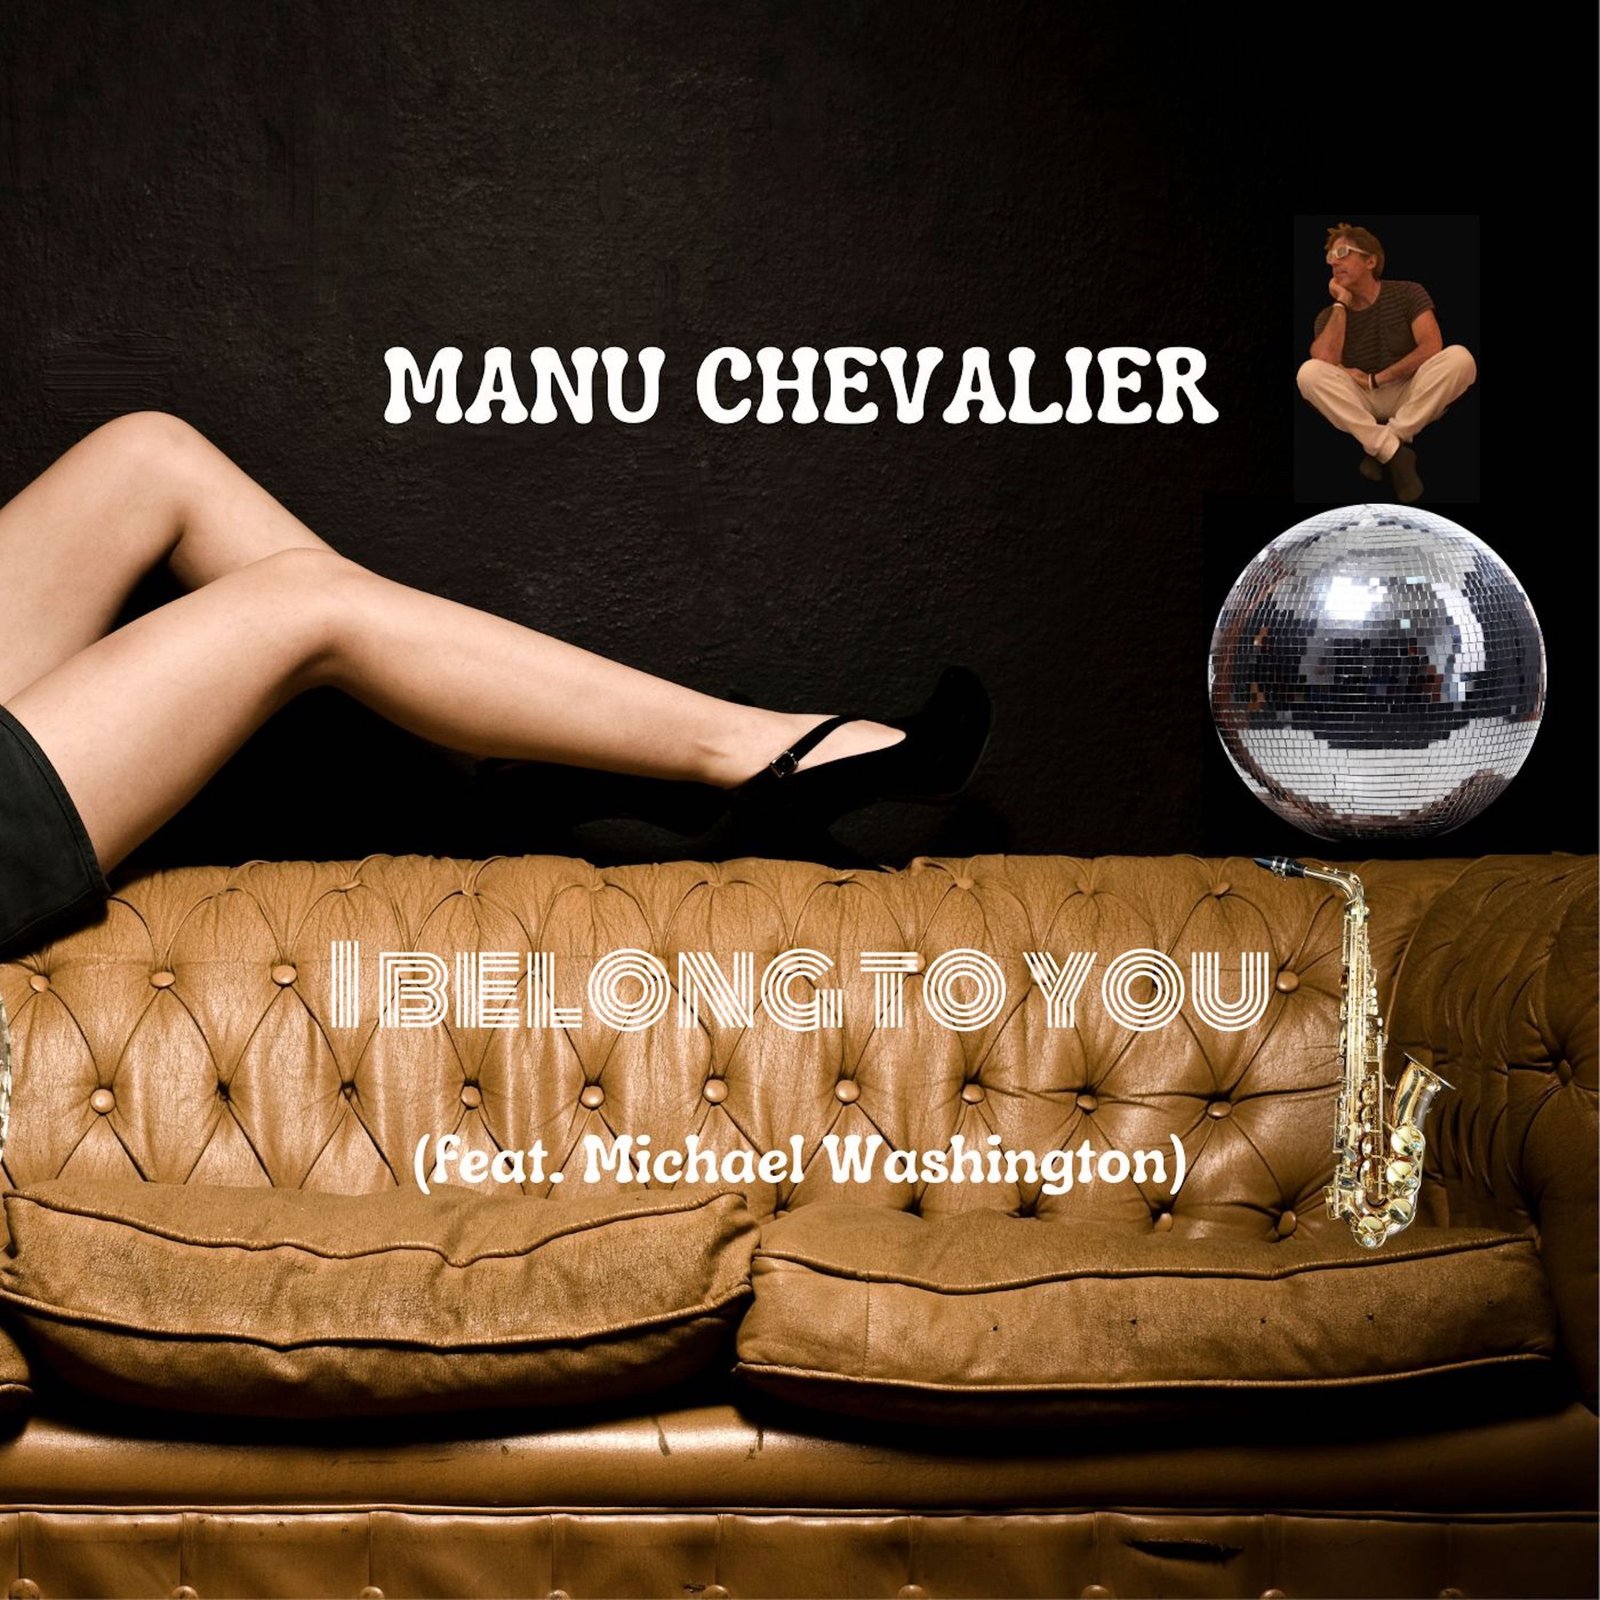 MANU CHEVALIER releasing I belong to you (feat Michael Washington)